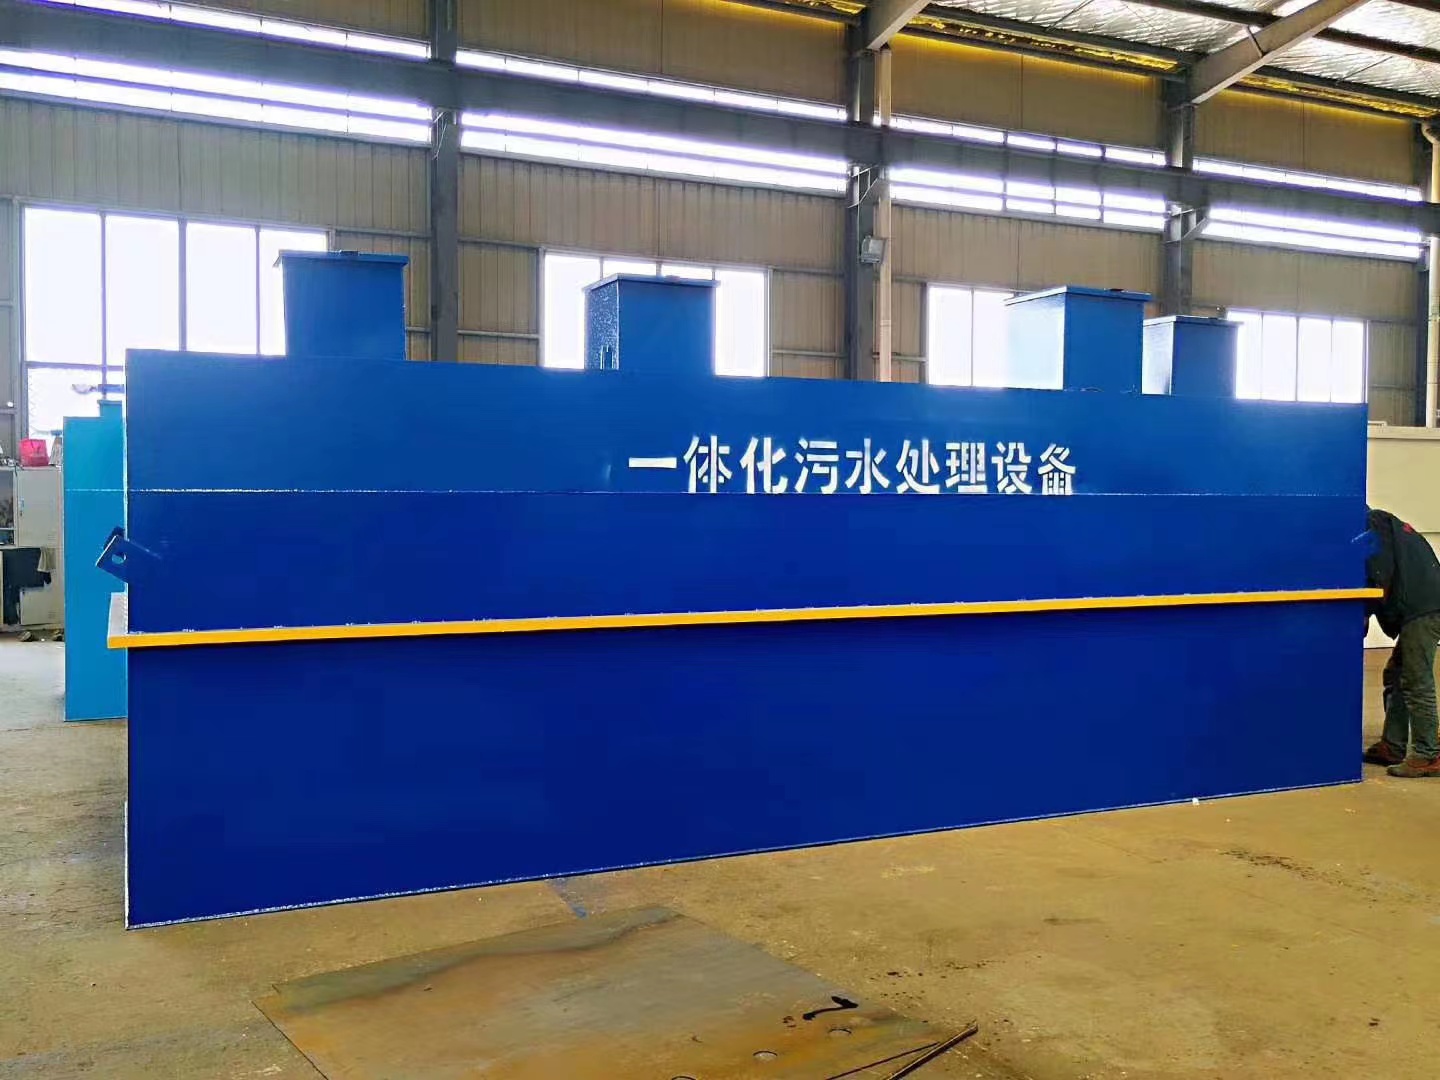 北京昌平絮凝池处理设备生产厂家